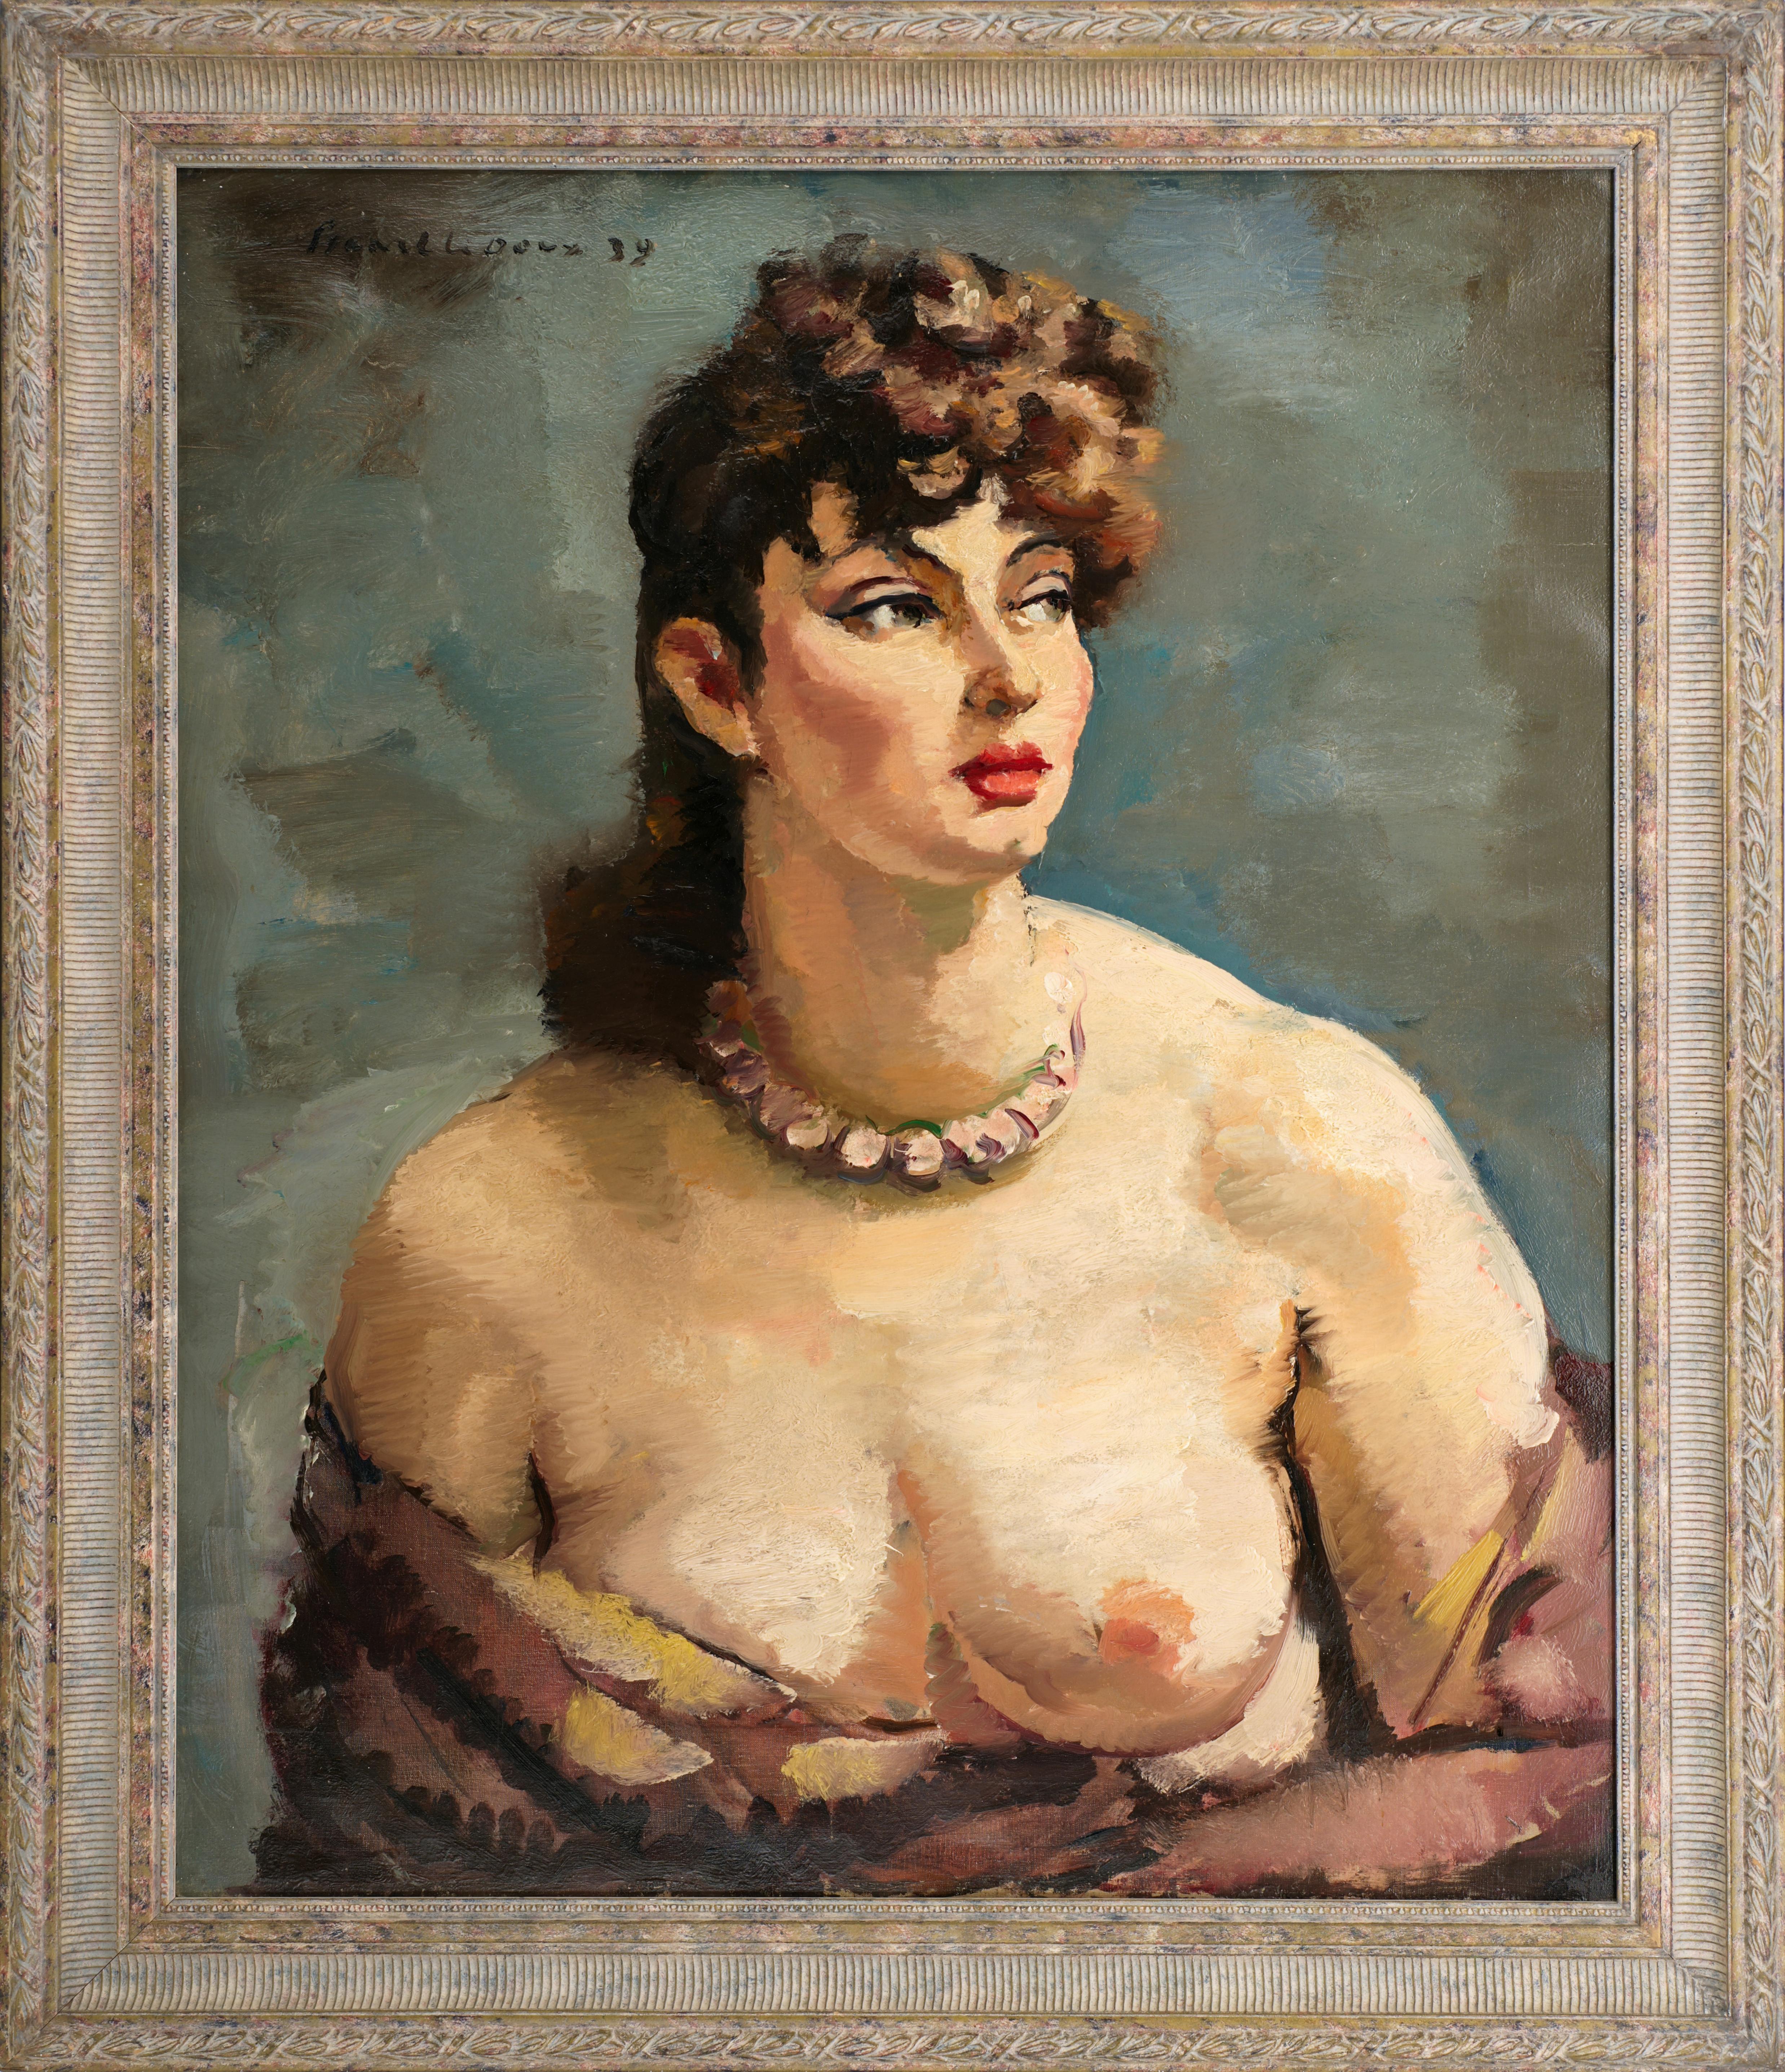 Charles PICART LE DOUX, La belle fille, huile sur toile, 1939